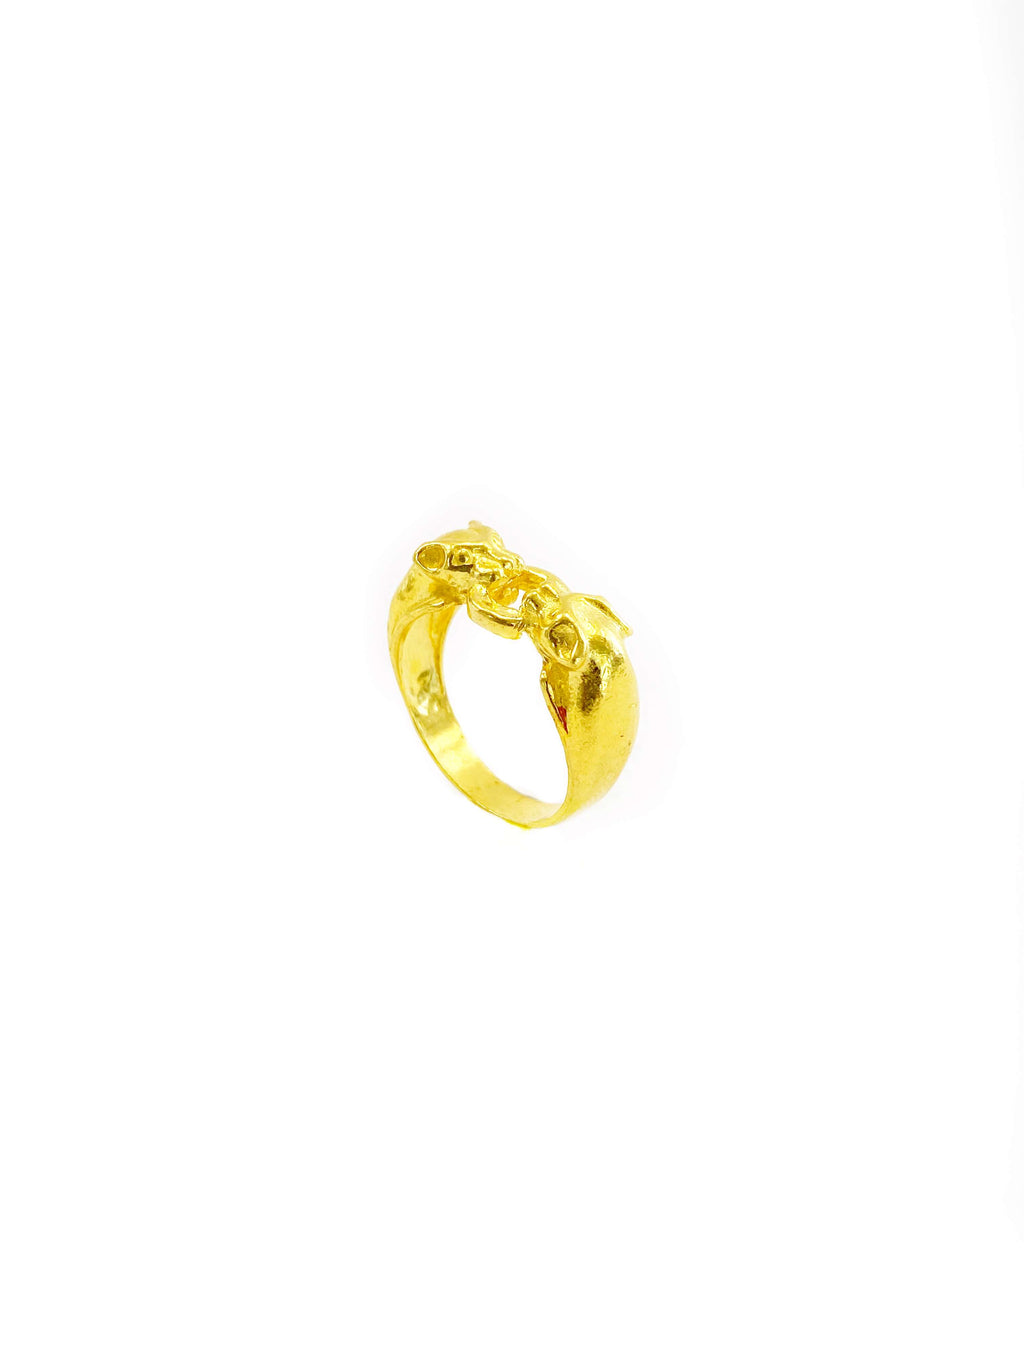 Making a Unique 24k Golden Ring #gold #shortvideo #trending #viral #24k  #shorts #short #reels - YouTube